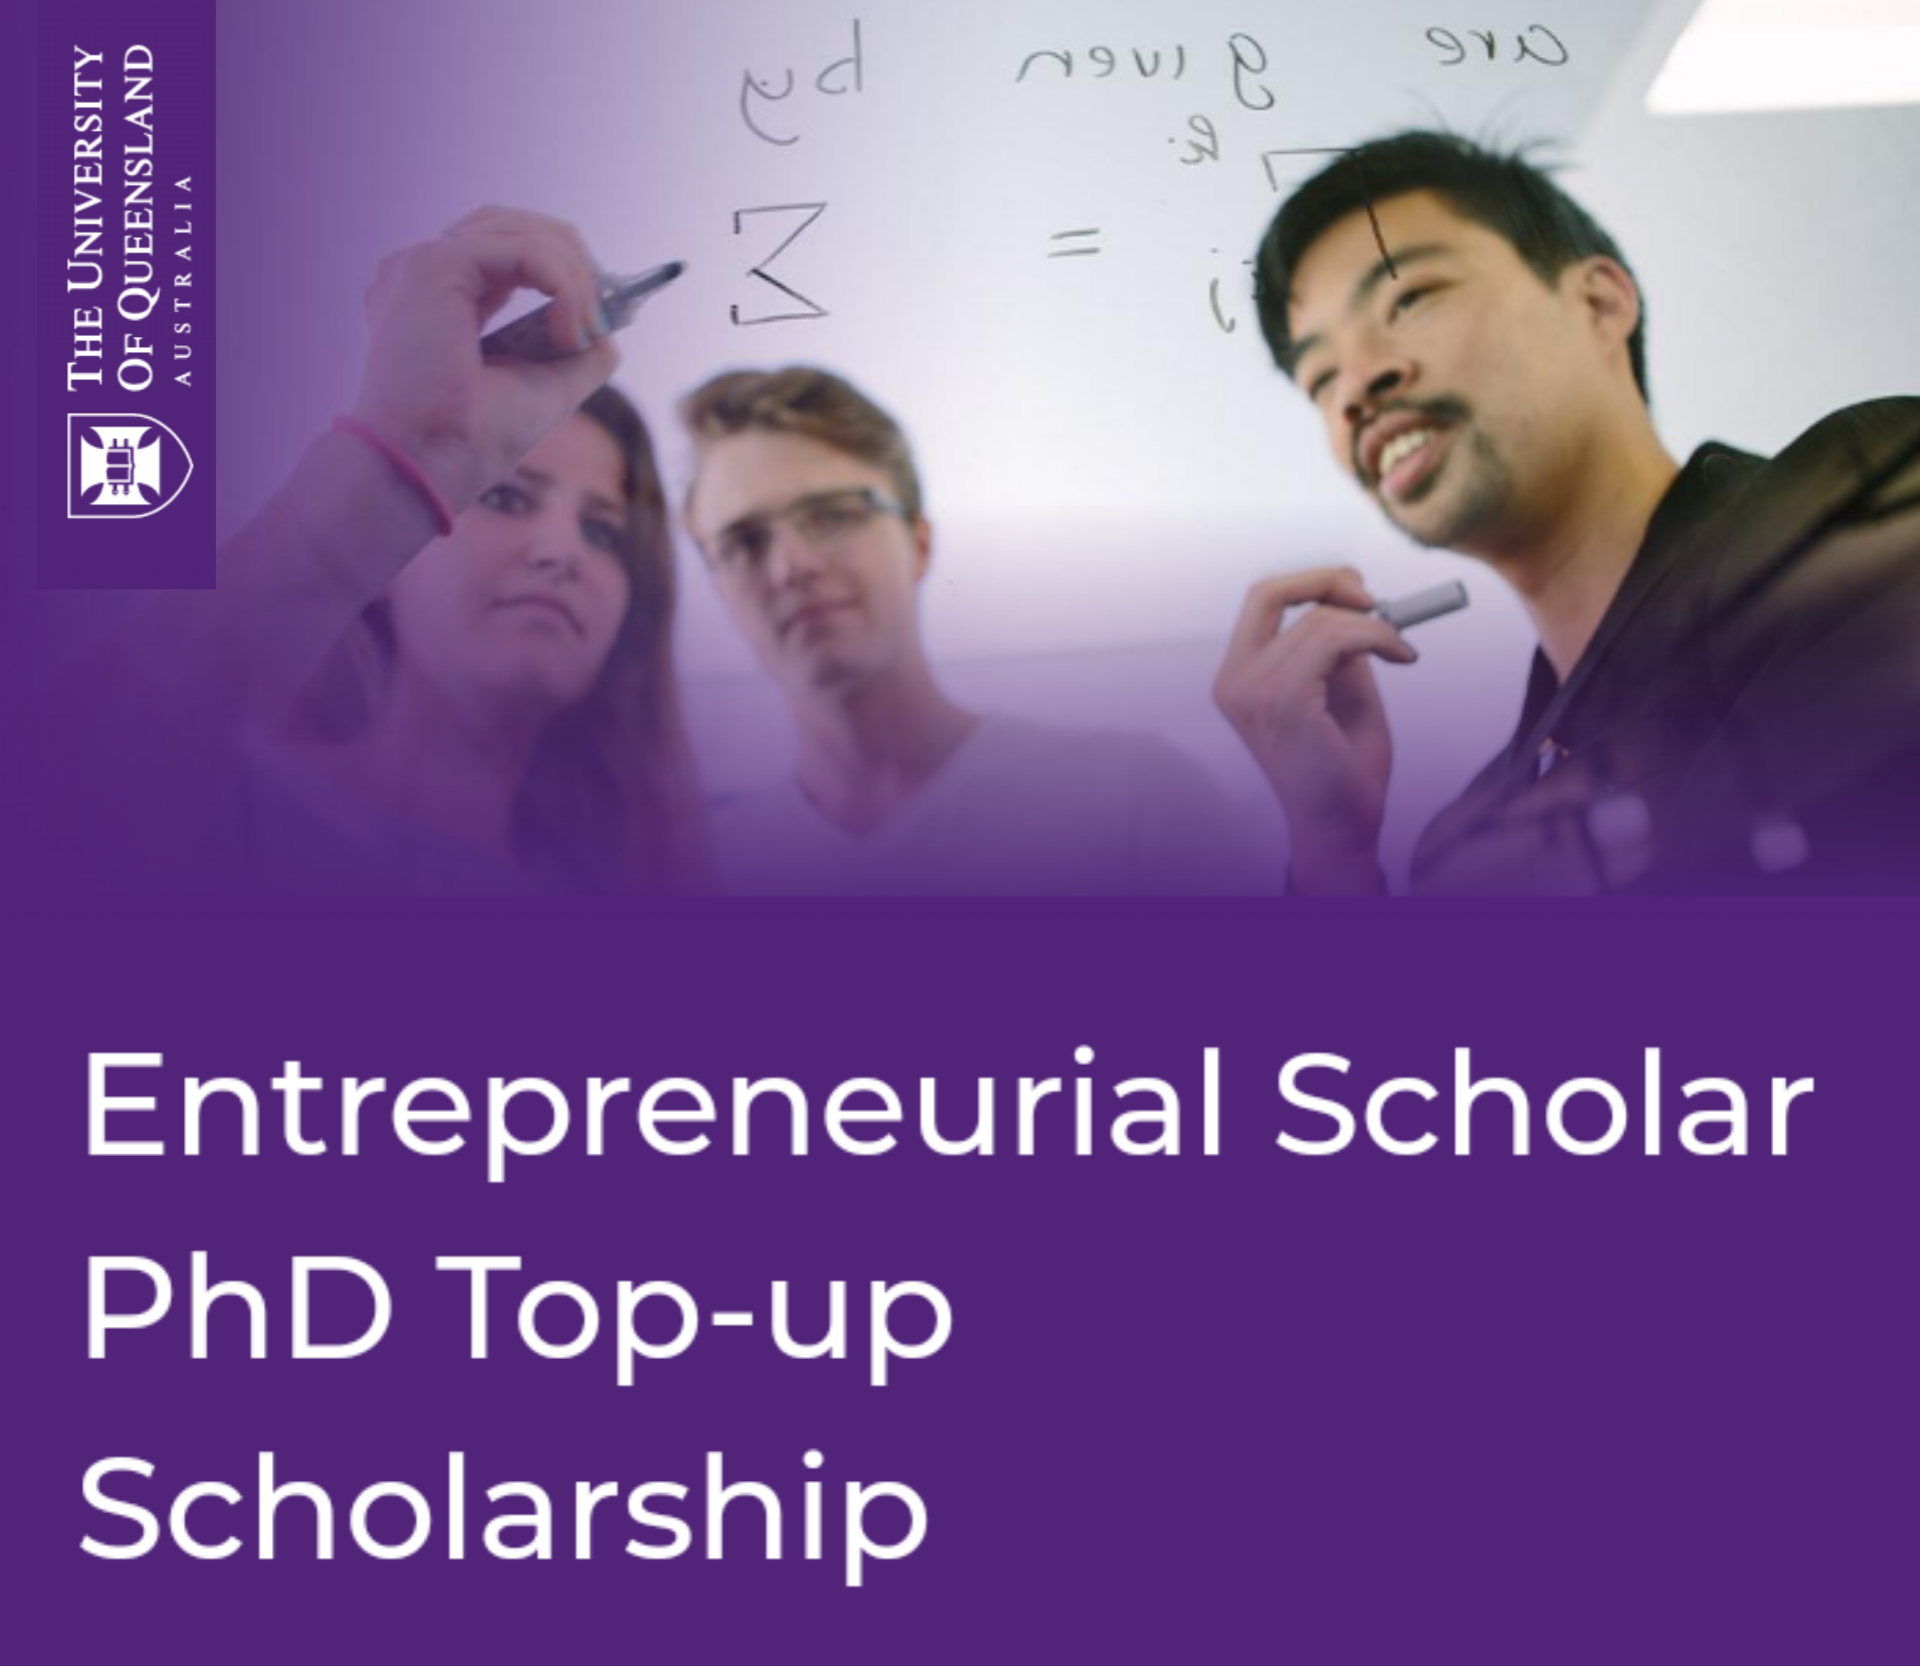 Entrepreneurial Scholar University of Queensland PhD Top-up Scholarship 2022-2023